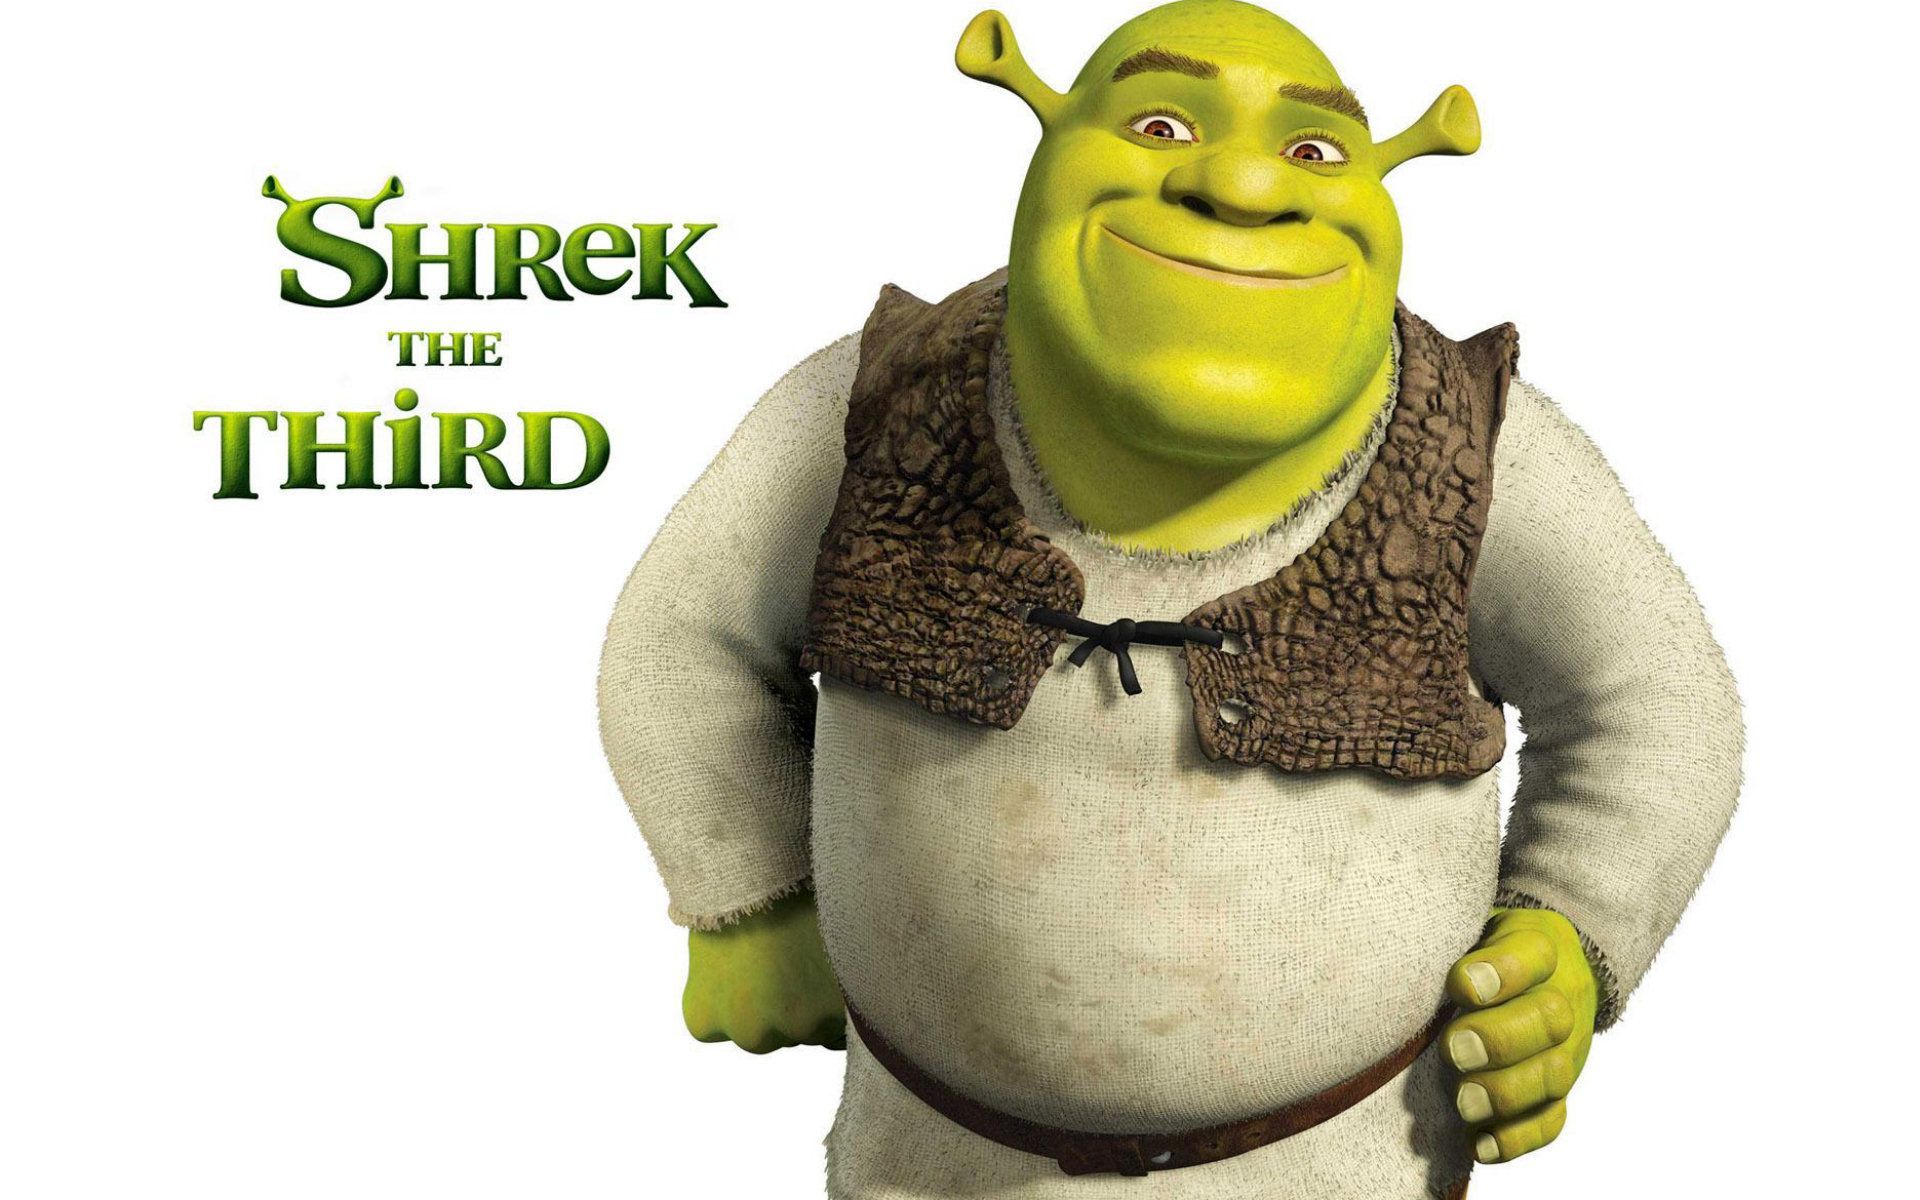 Shrek Forever After Full HD Image Wallpaper for PC Cartoons 1280